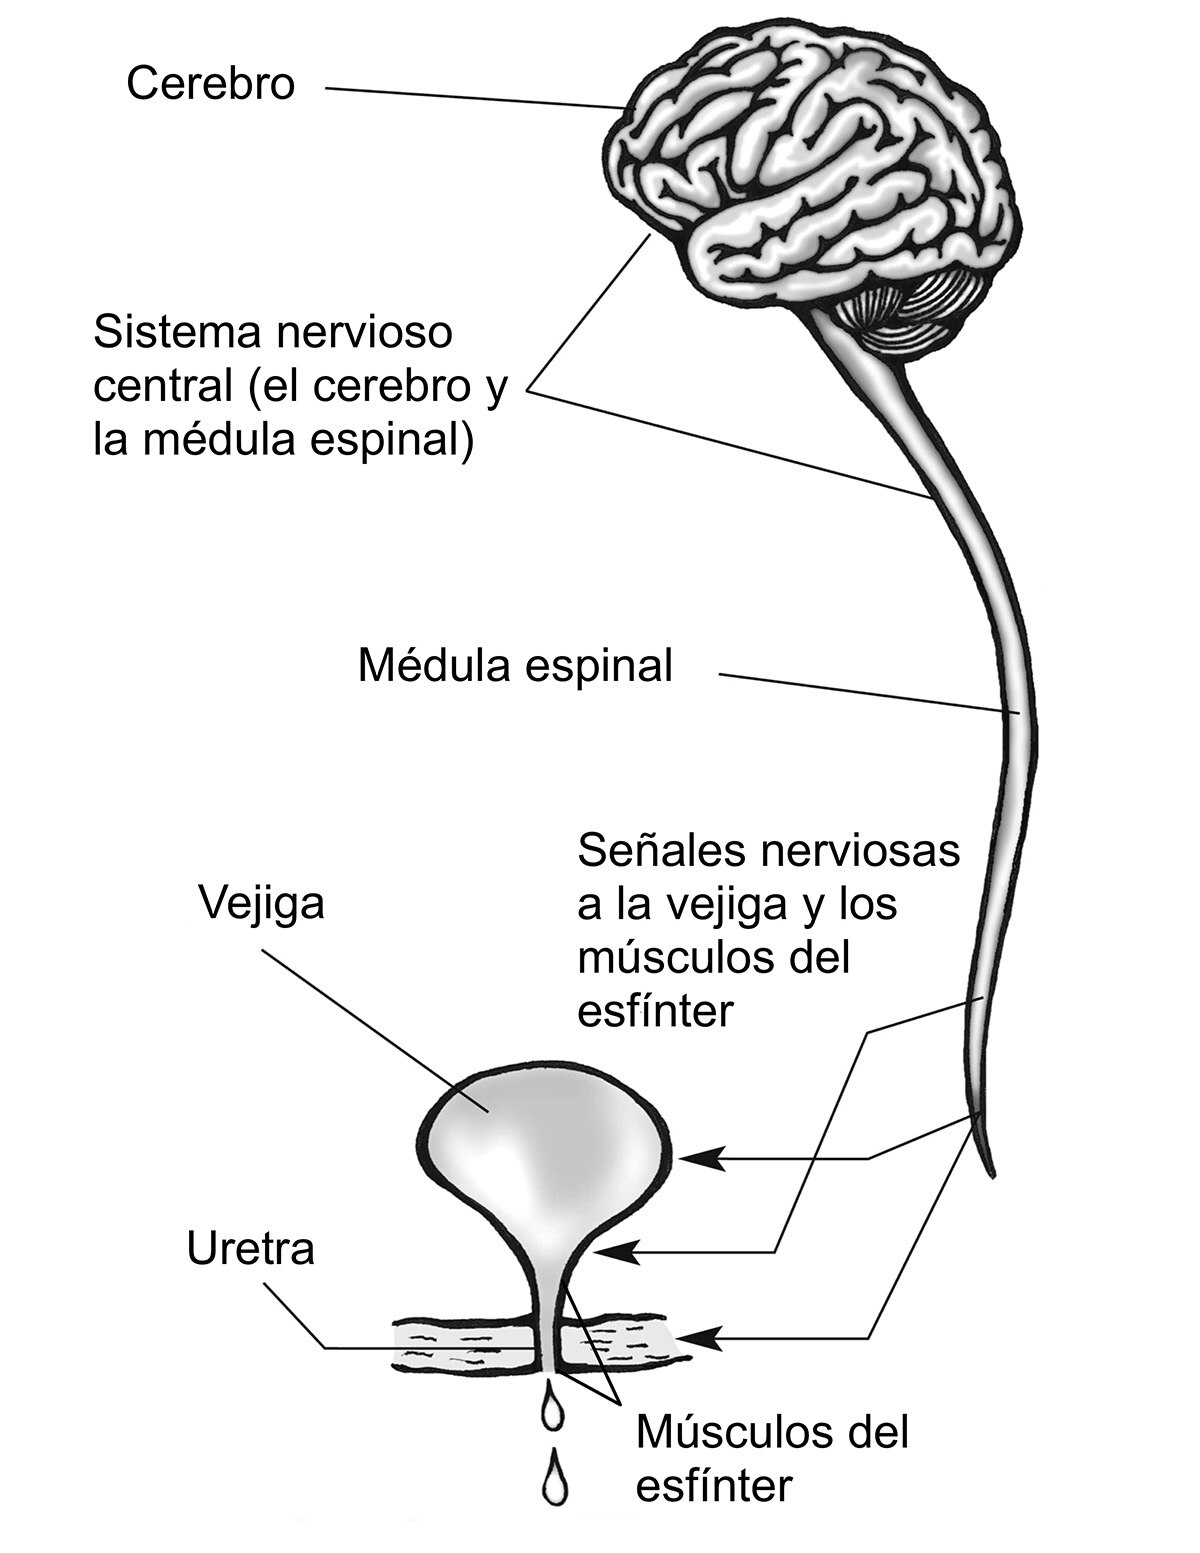 El sistema nervioso central (cerebro y médula espinal) muestra las señales nerviosas que viajan del cerebro, a través de la médula espinal, a la vejiga, uretra y los músculos del esfínter. 